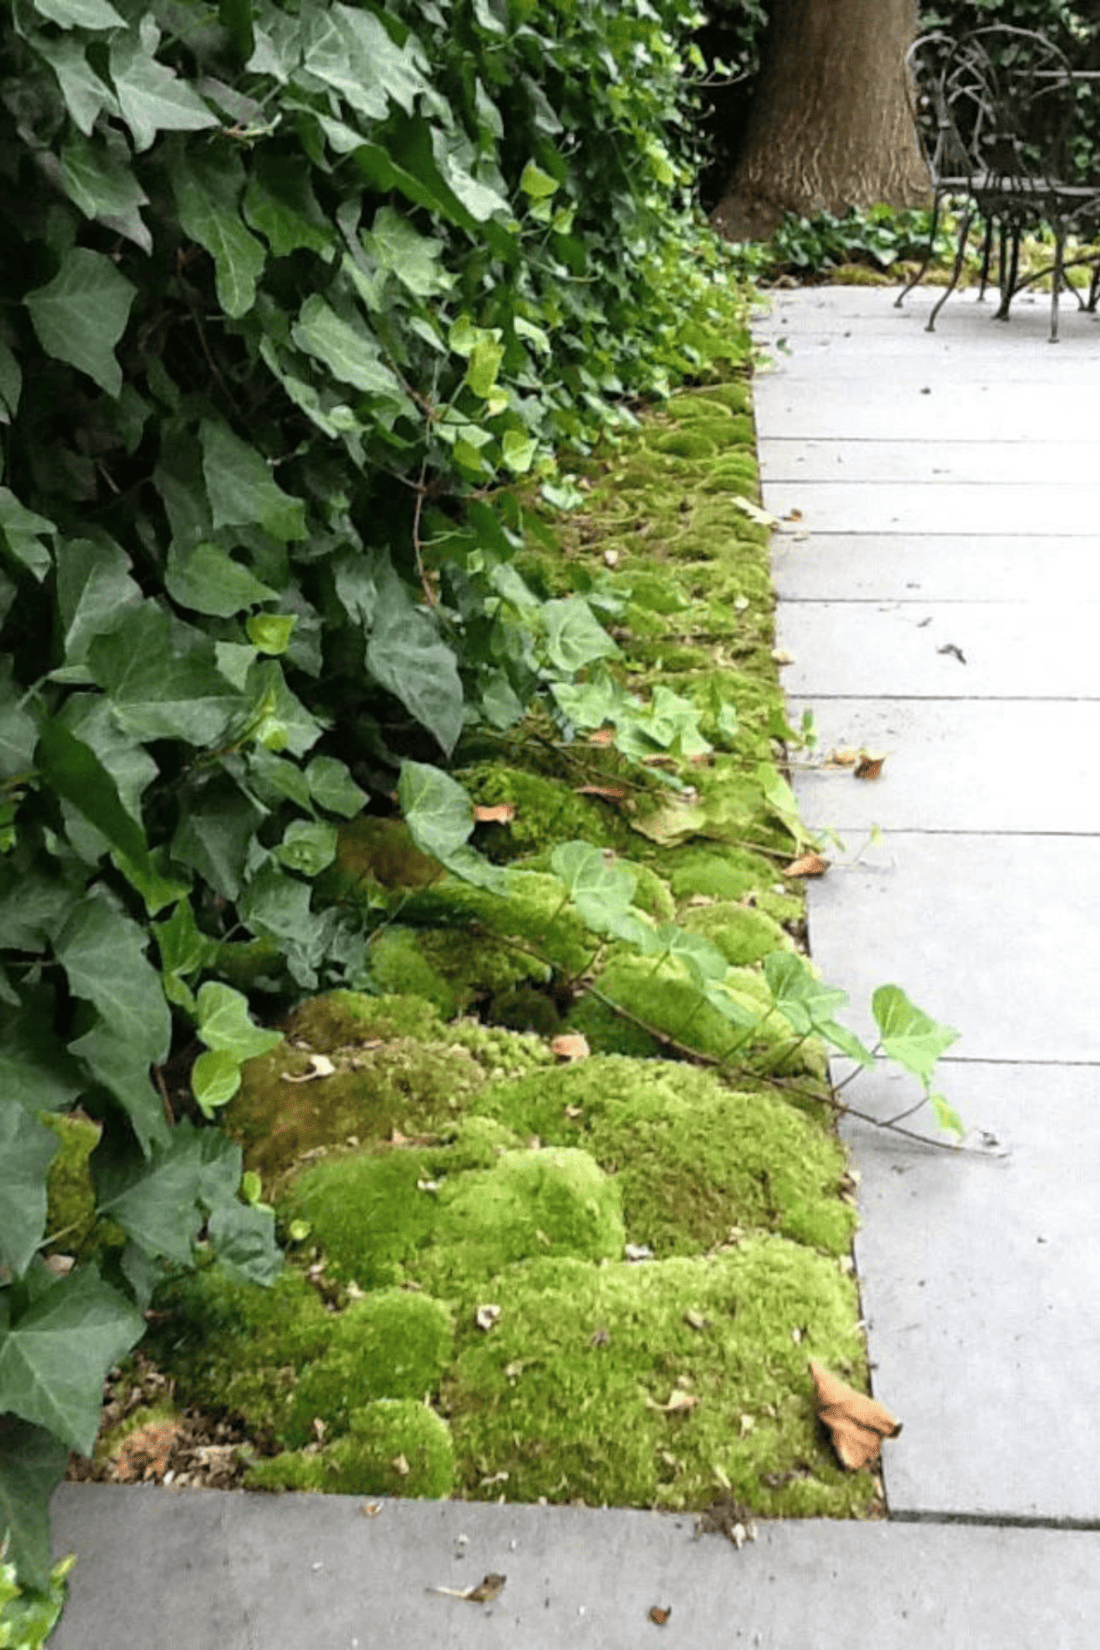 Moss growing on a sidewalk in a garden.